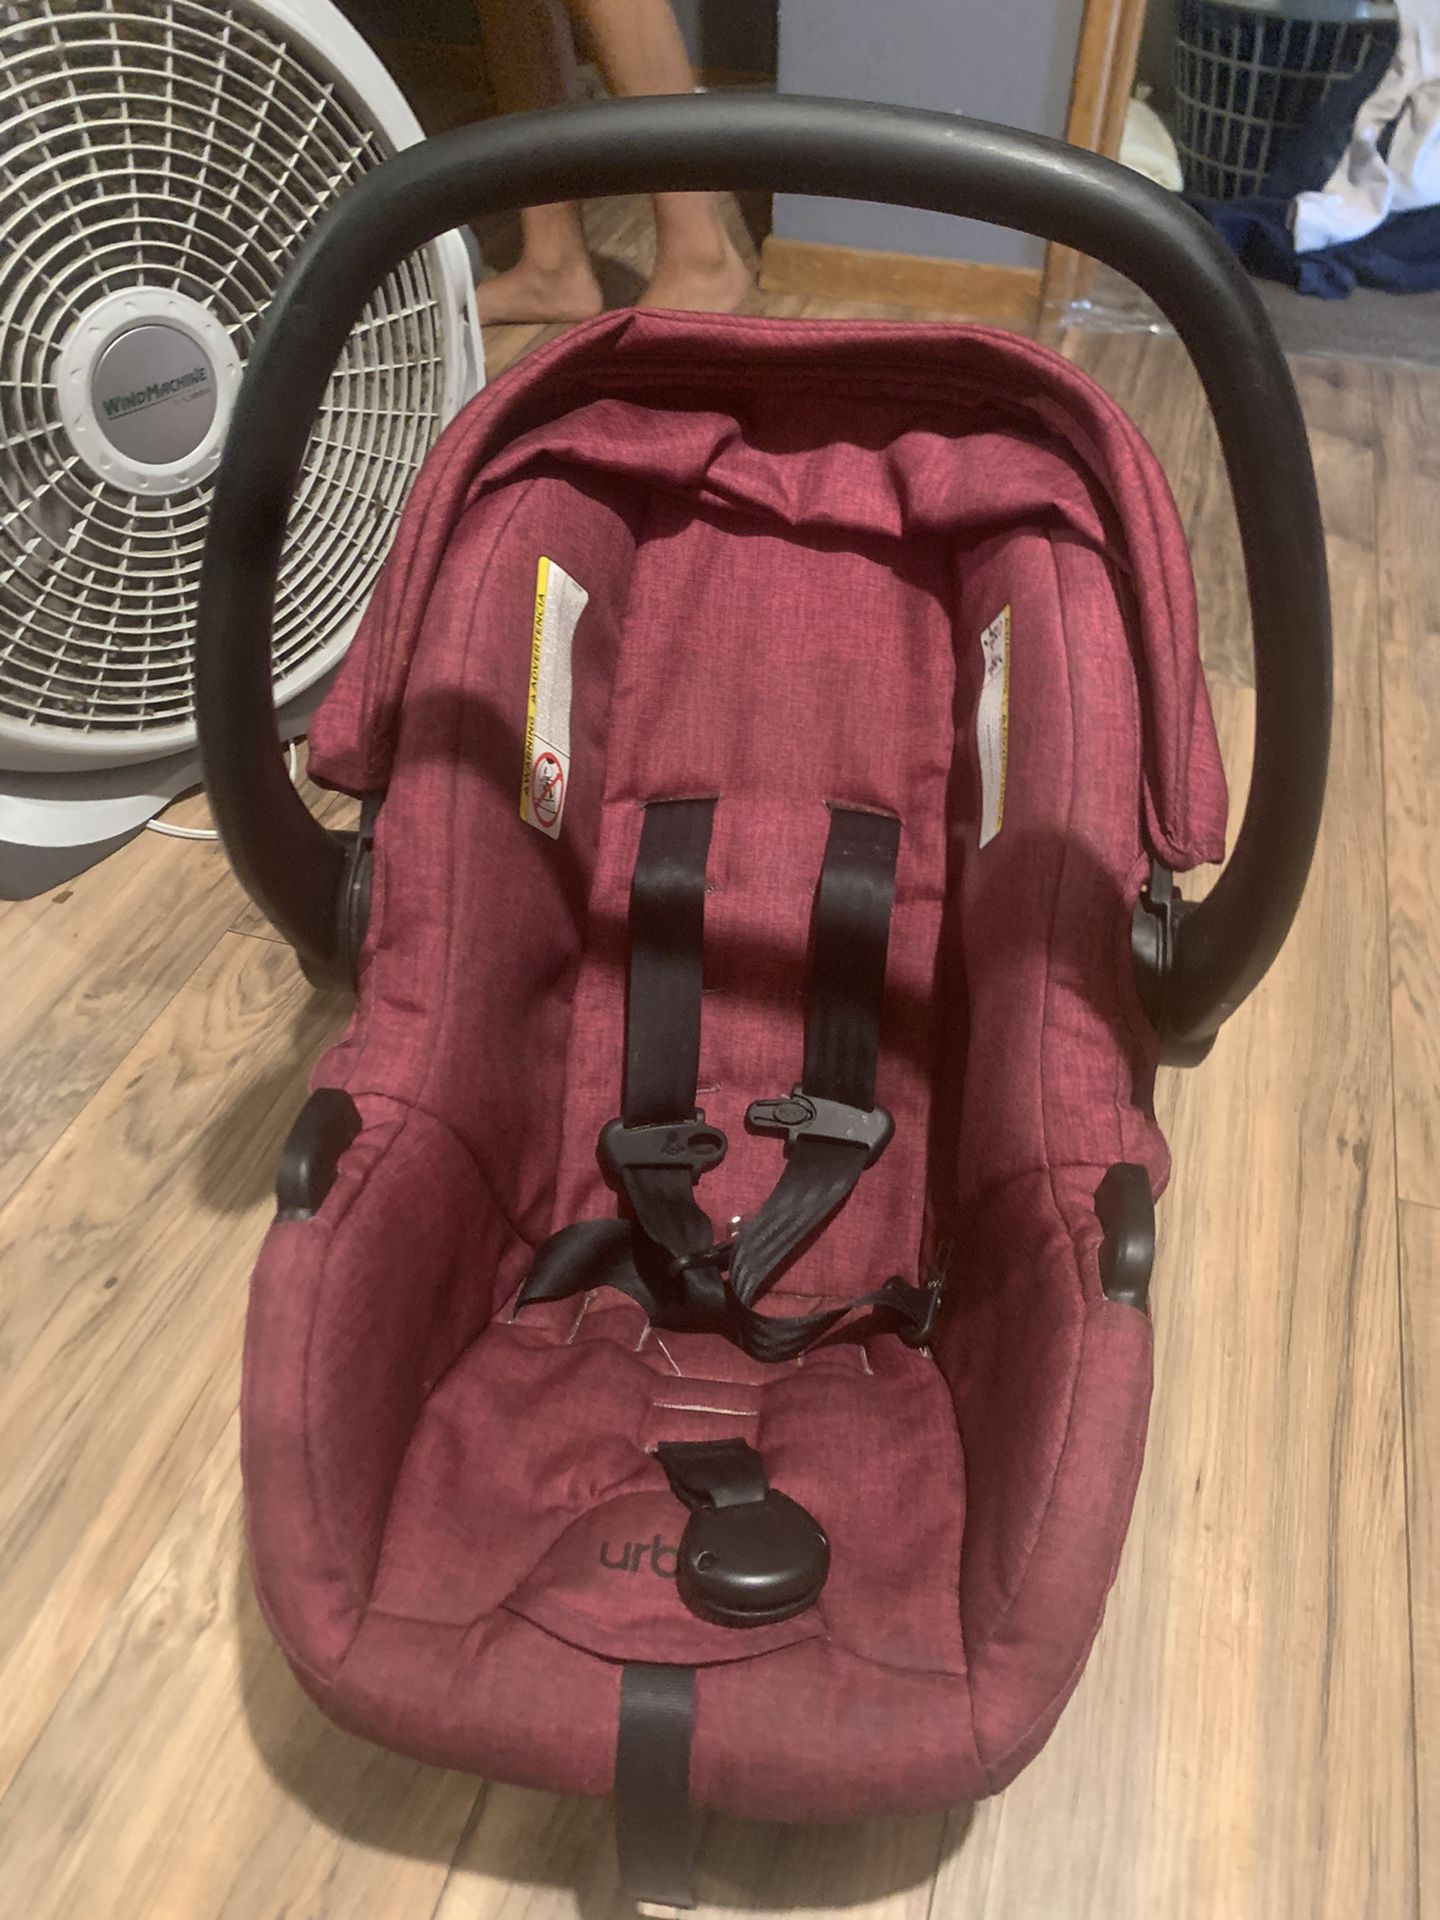 Car seat stroller set